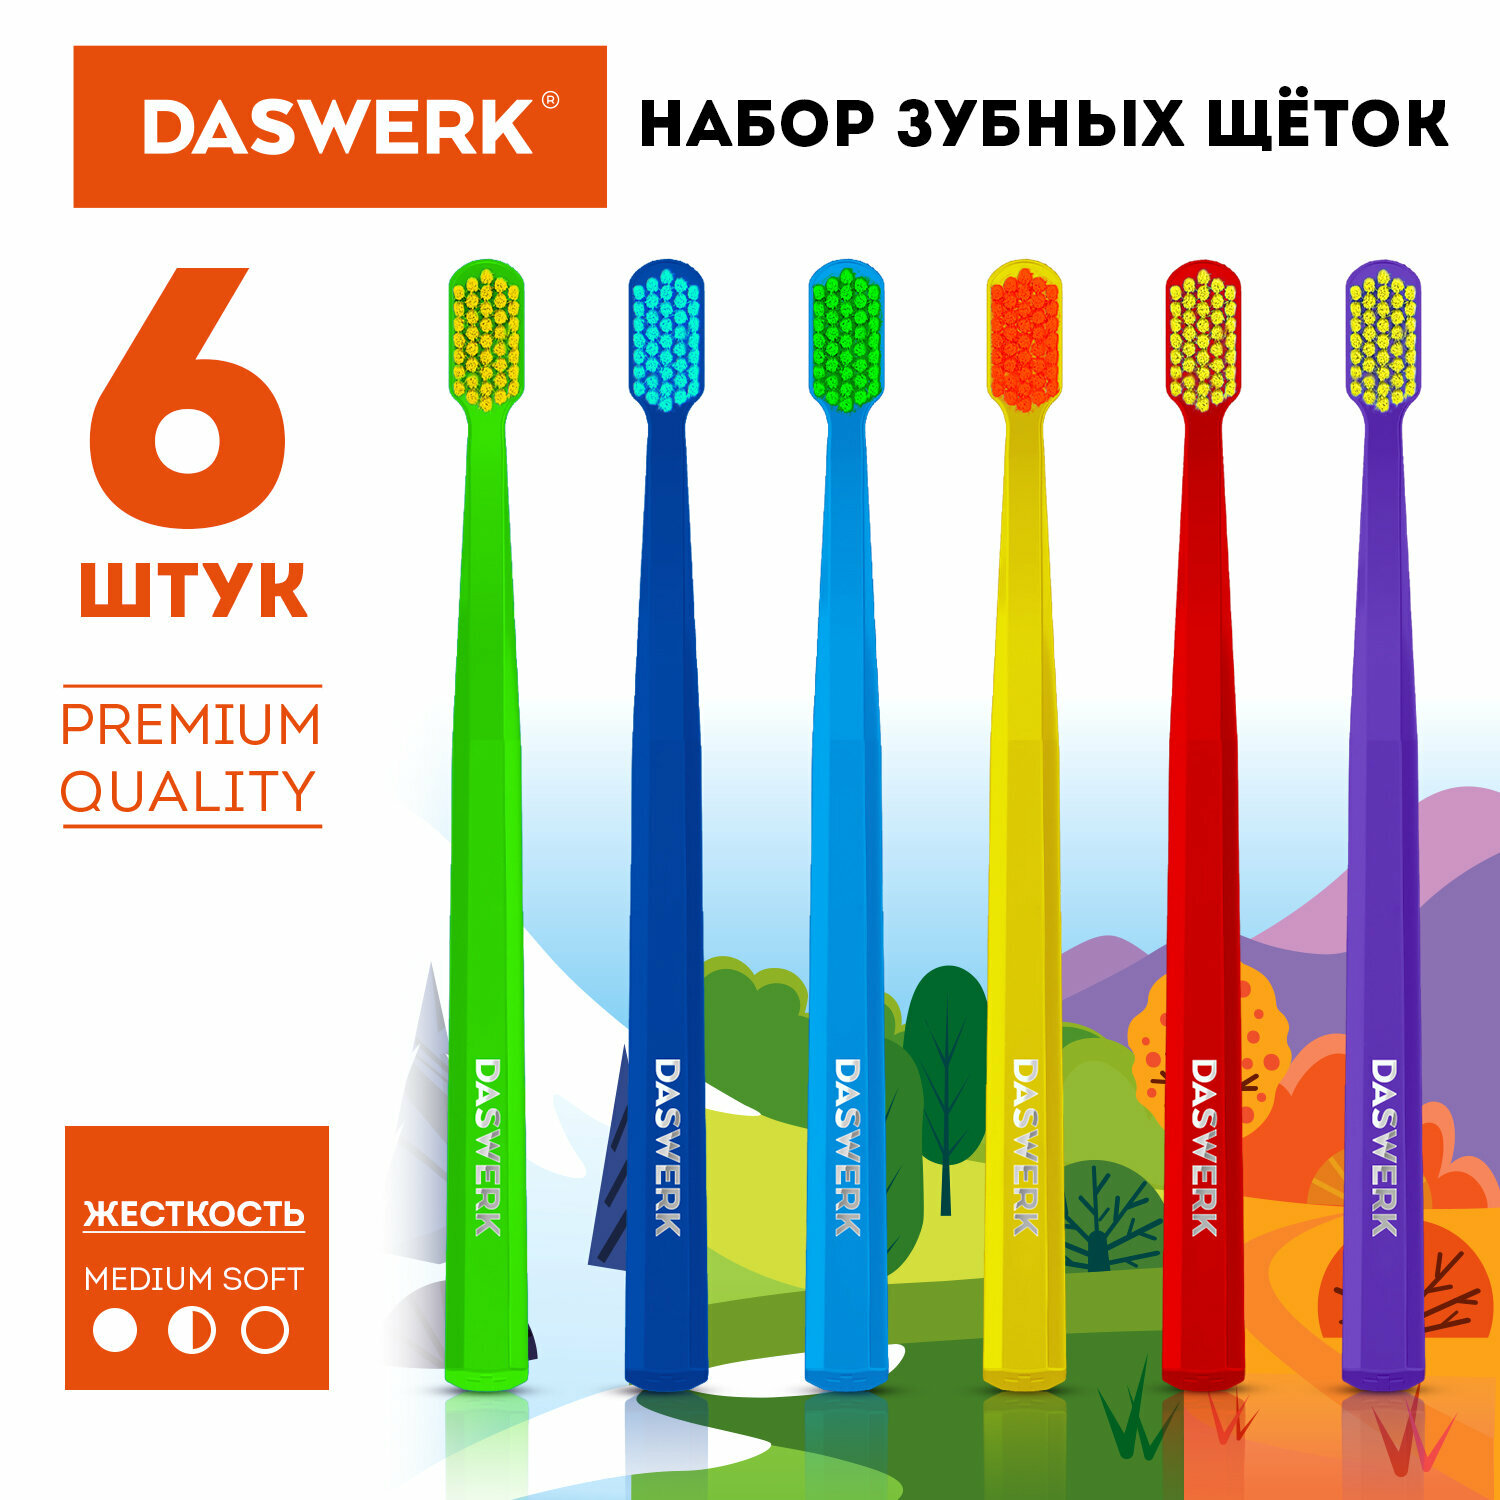 Зубная щетка мягкая/средней жесткости для зубов набор 4 штуки для взрослых и детей Daswerk MEDIUM Soft 608213